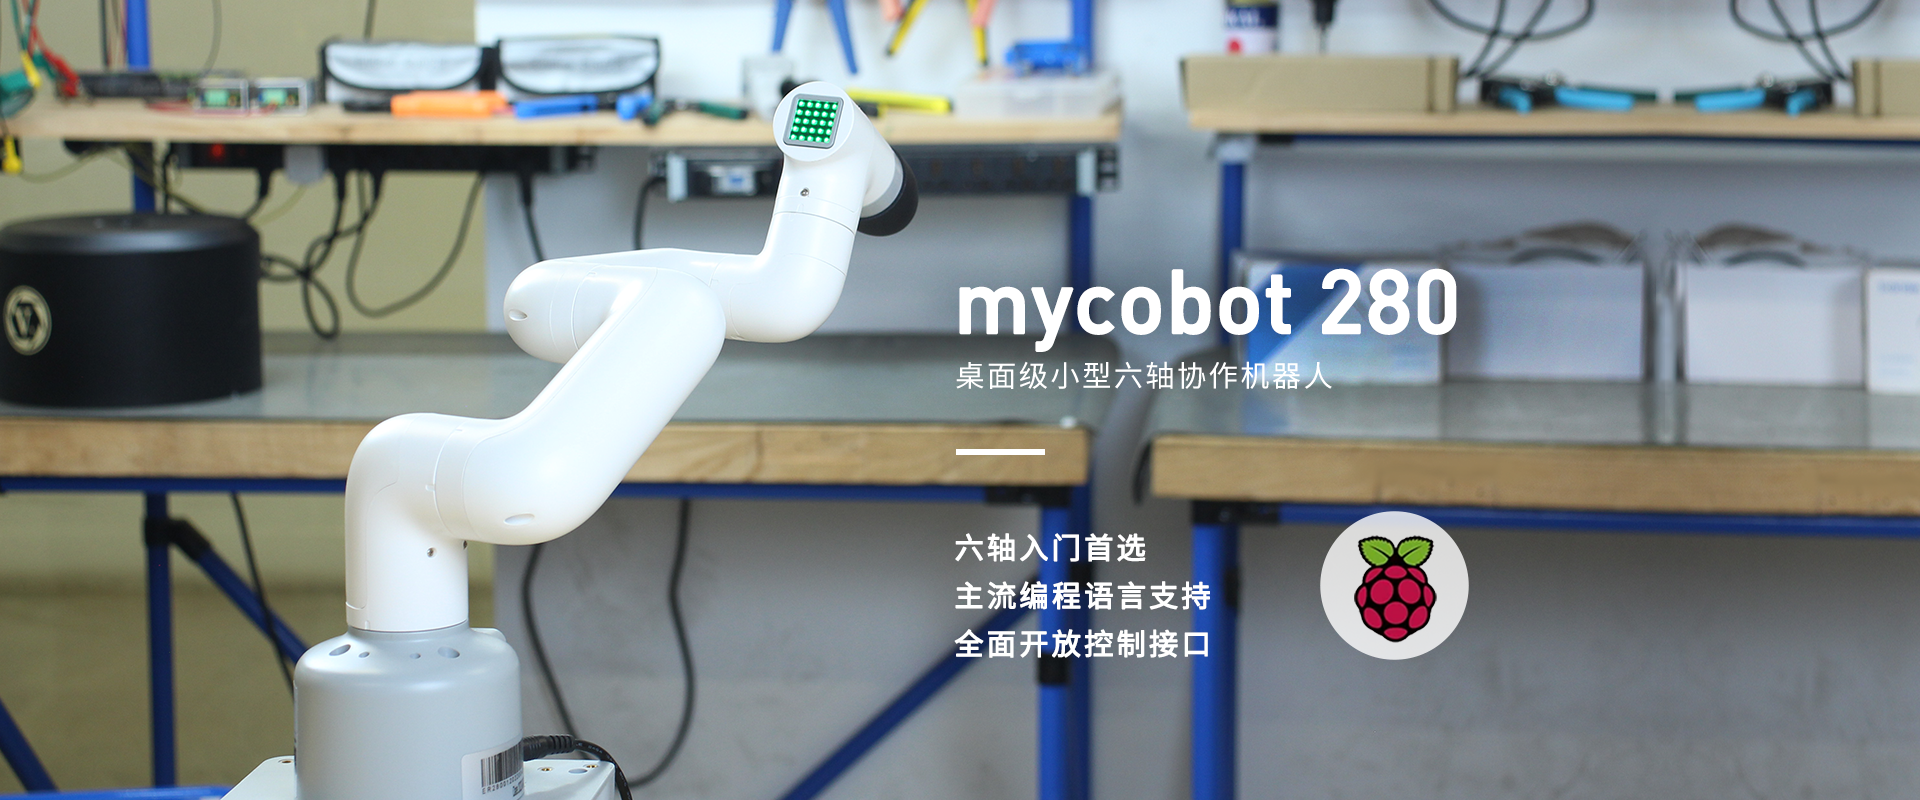 mycobot 280 pi cn